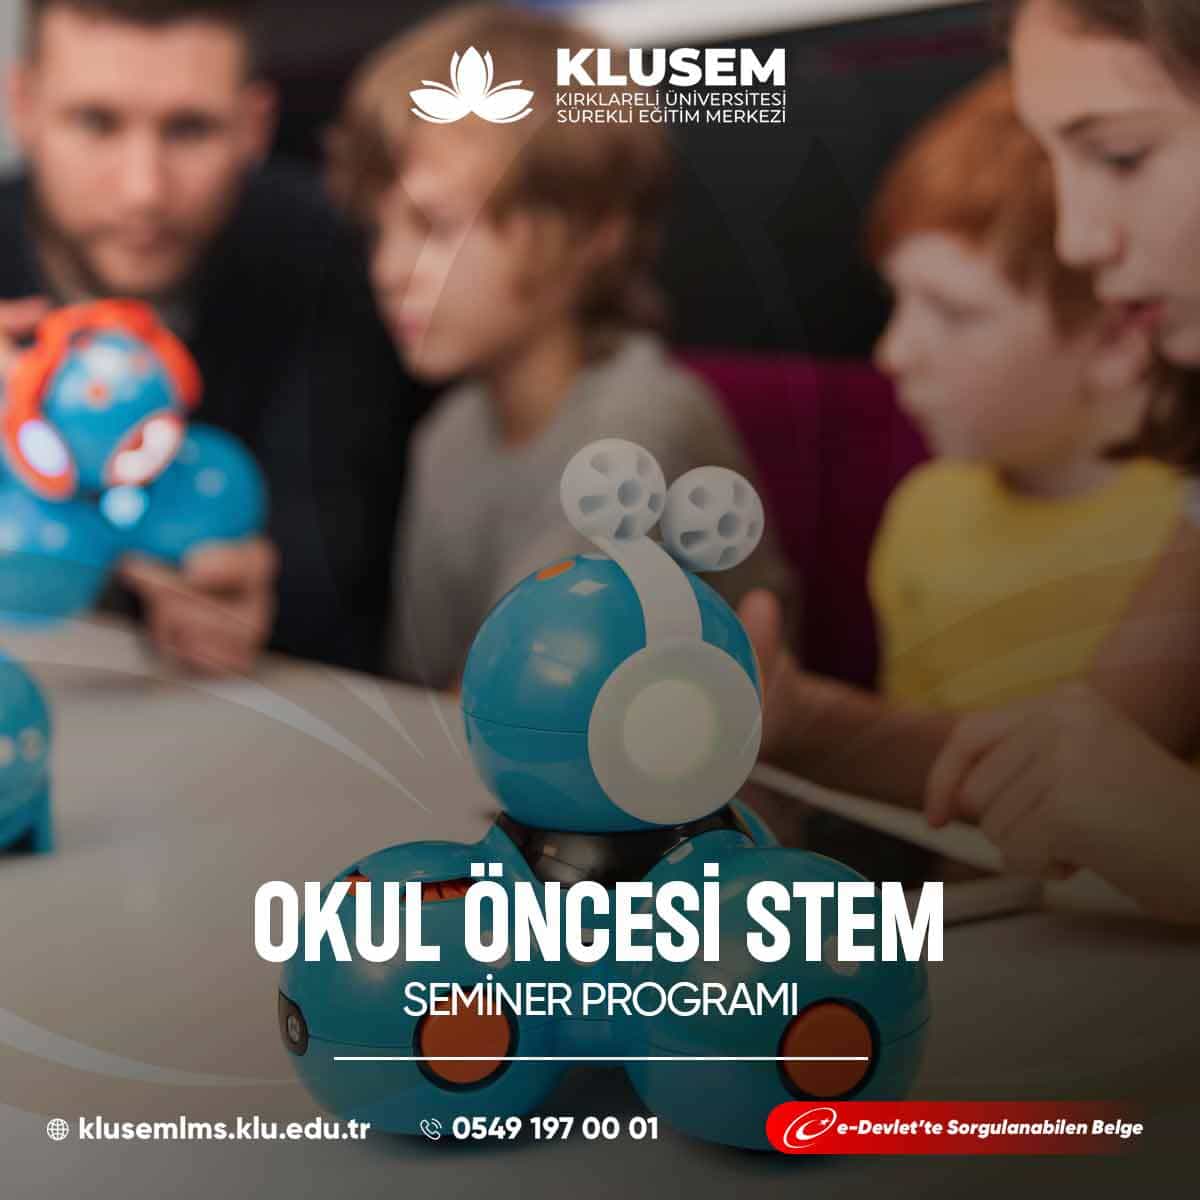 Okul Öncesi STEM, çocuklara fen bilimleri, teknoloji, mühendislik ve matematik alanlarında bilgi ve beceriler kazandırmayı amaçlayan bir eğitim yaklaşımıdır. 